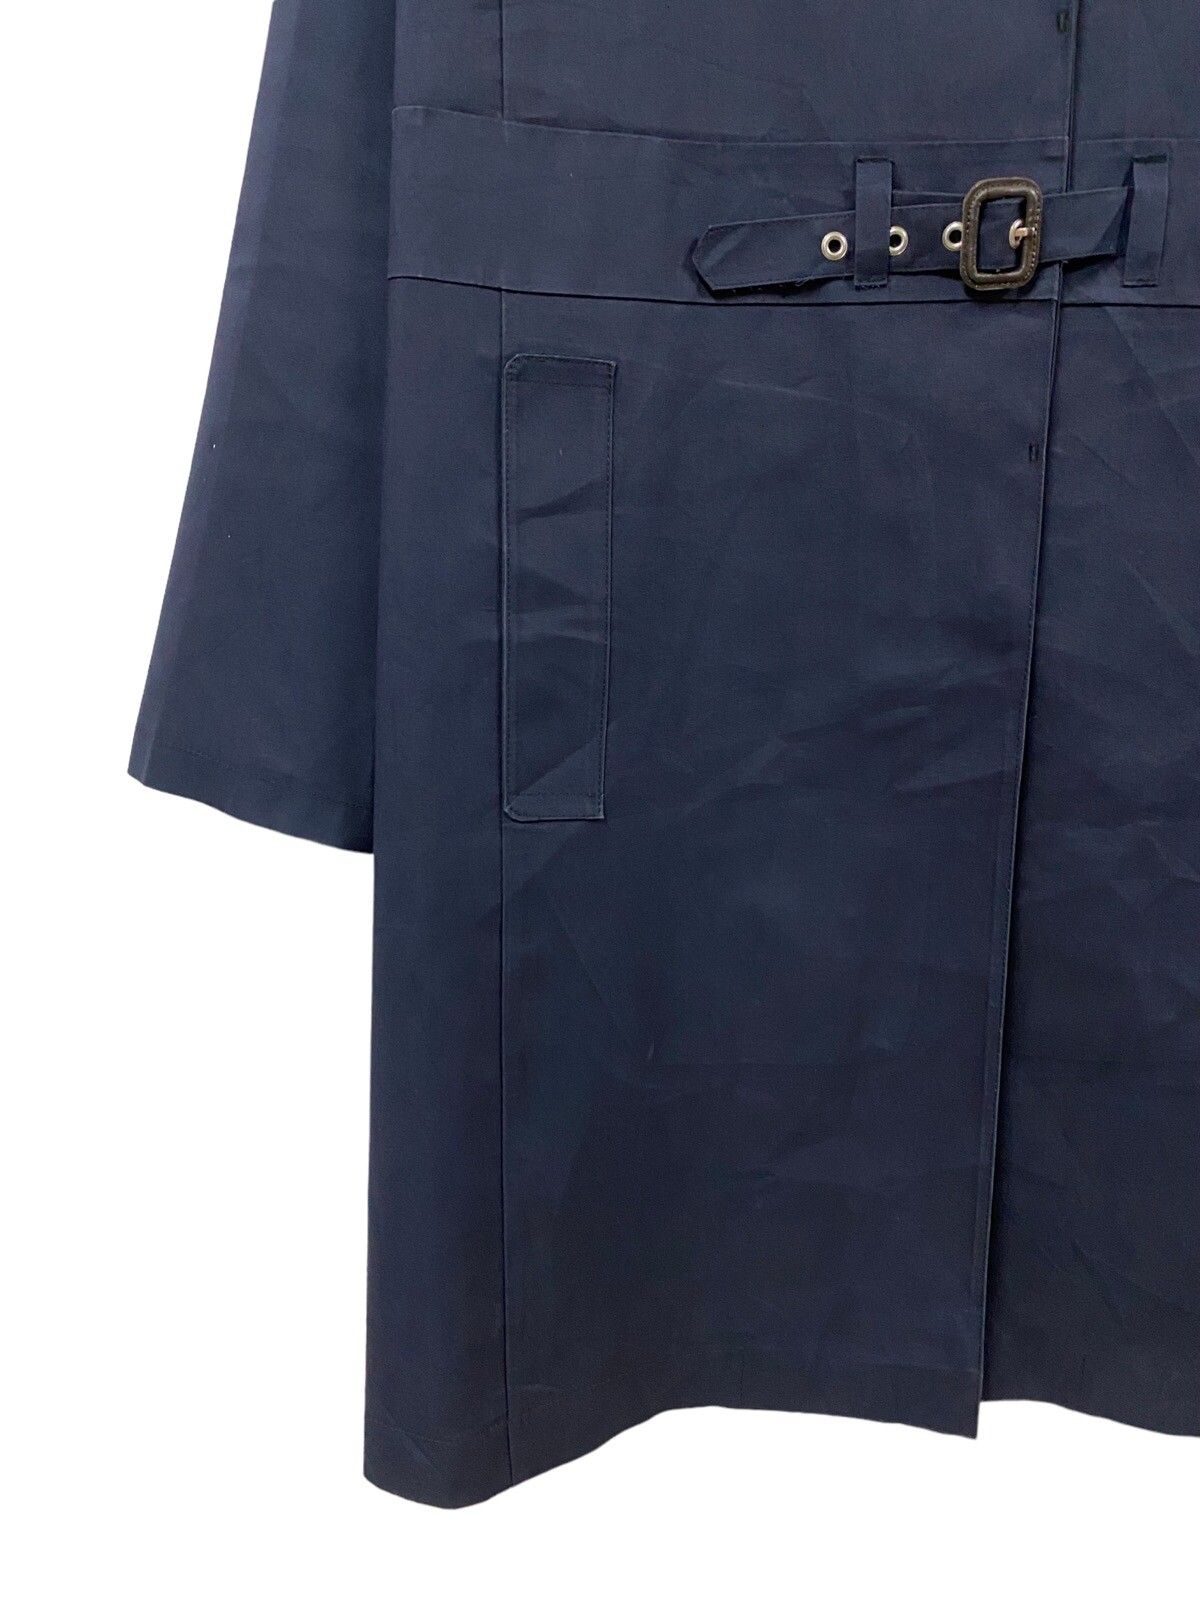 Mackintosh Genuine Handmade Trenchcoat Belted Jacket - 9